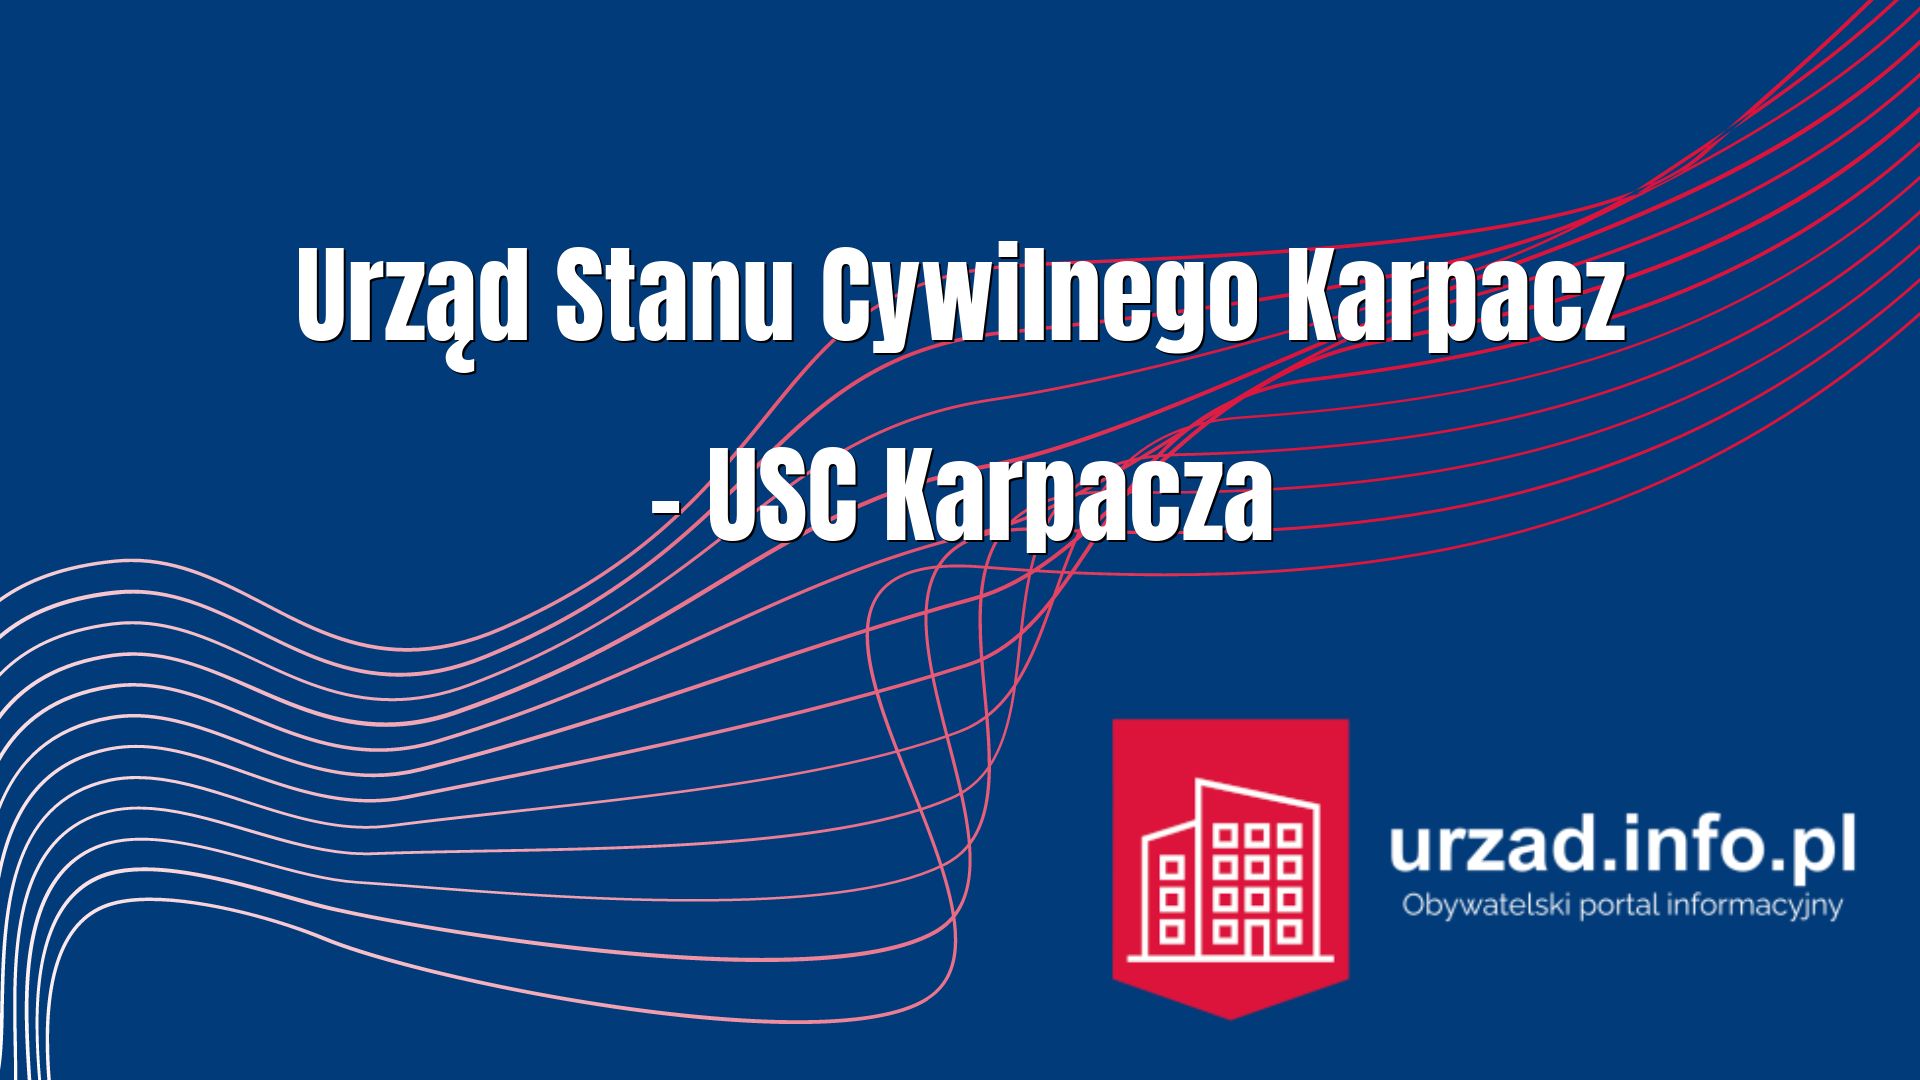 Urząd Stanu Cywilnego Karpacz – USC Karpacza